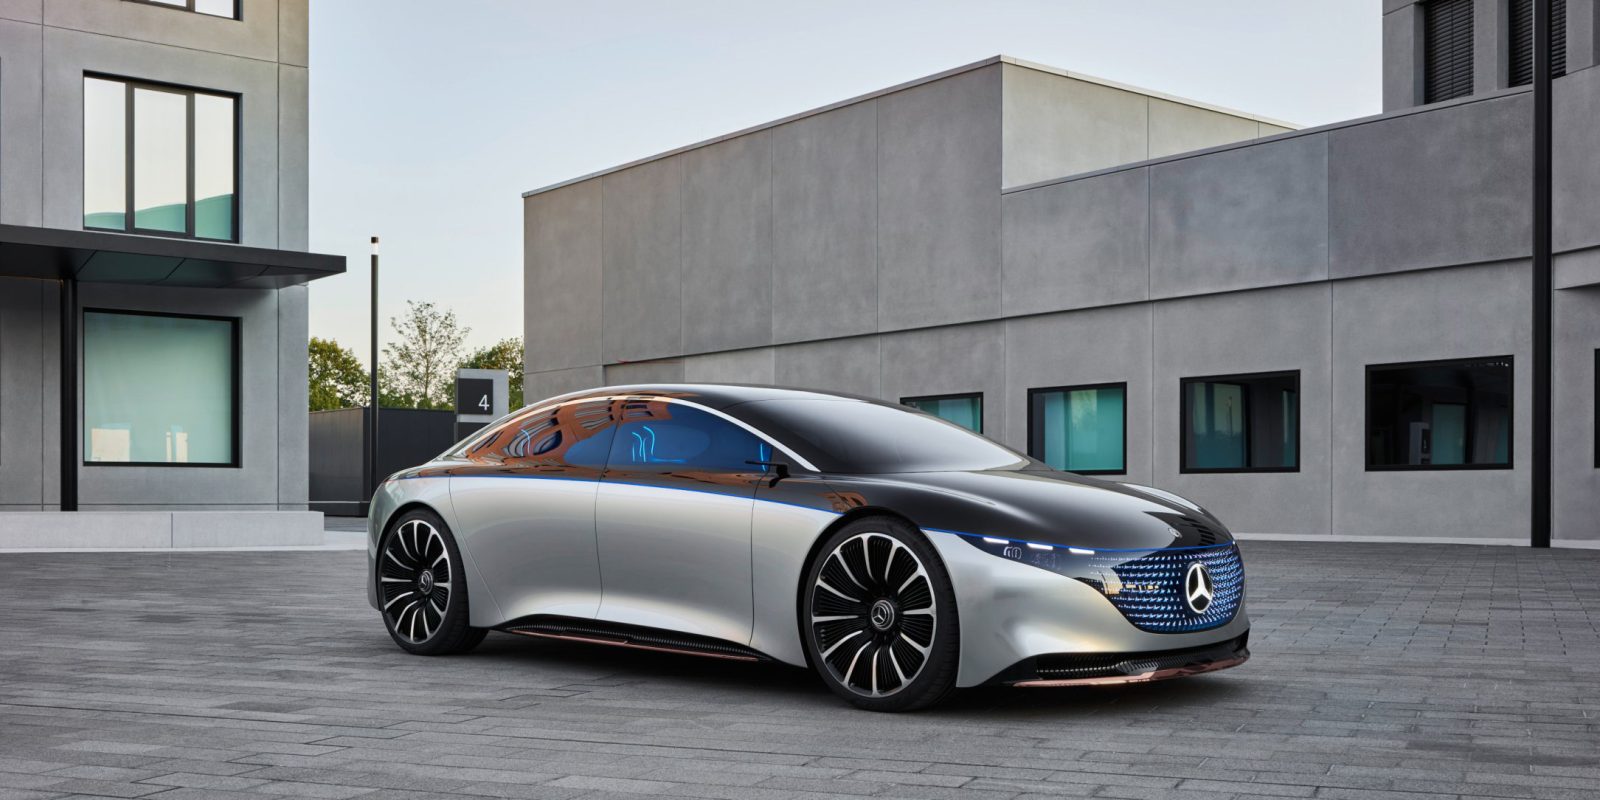 El lanzamiento del Mercedes EQS, el coche eléctrico más avanzado de la marca, demuestra que el mercado de autos eléctricos está creciendo en Europa